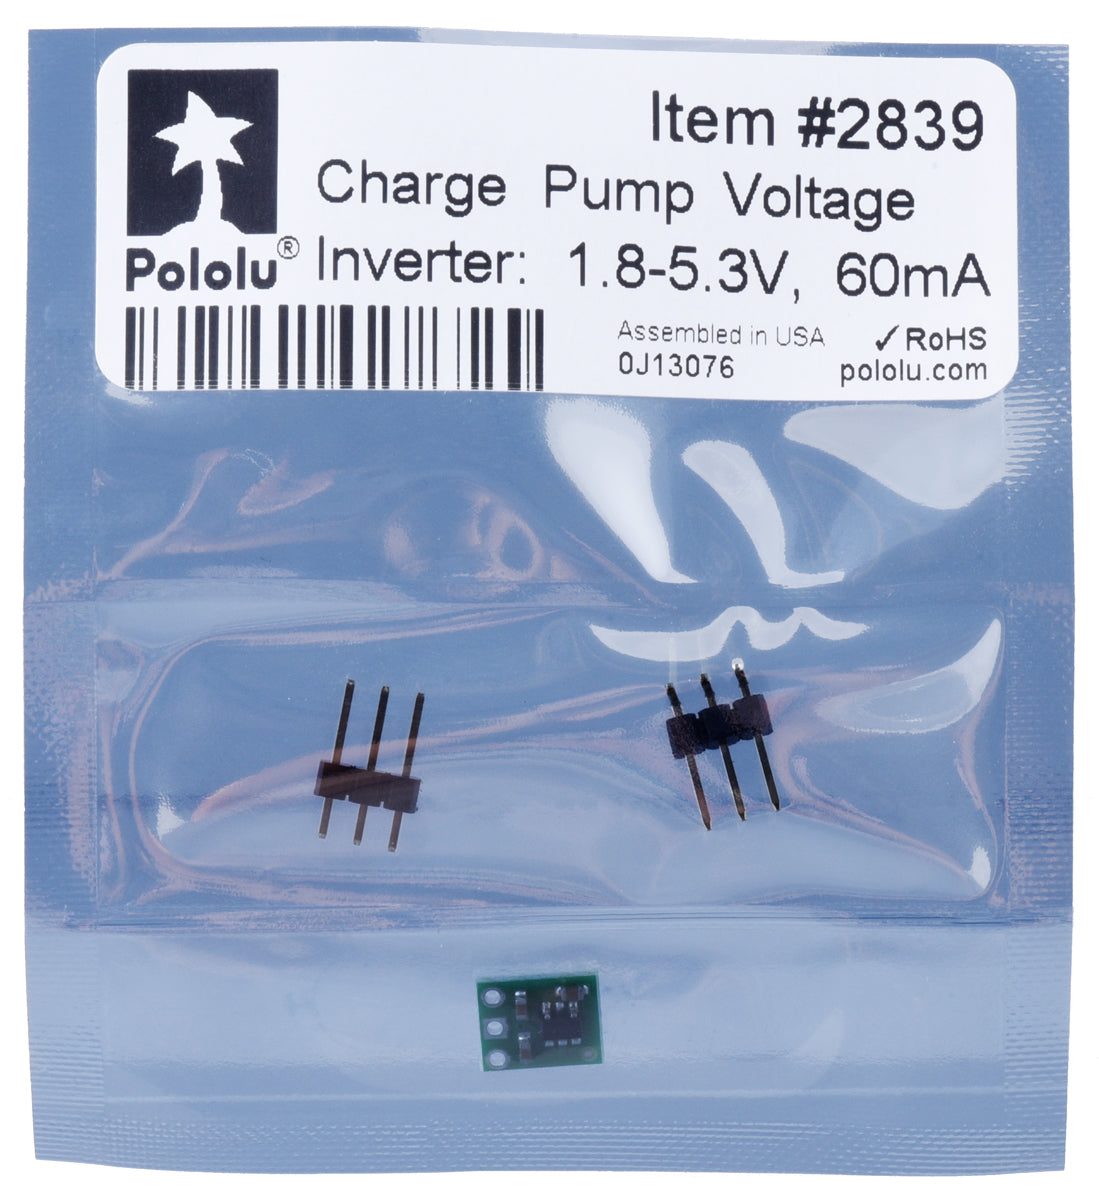 Charge Pump Voltage Inverter: 1.8-5.3V, 60mA